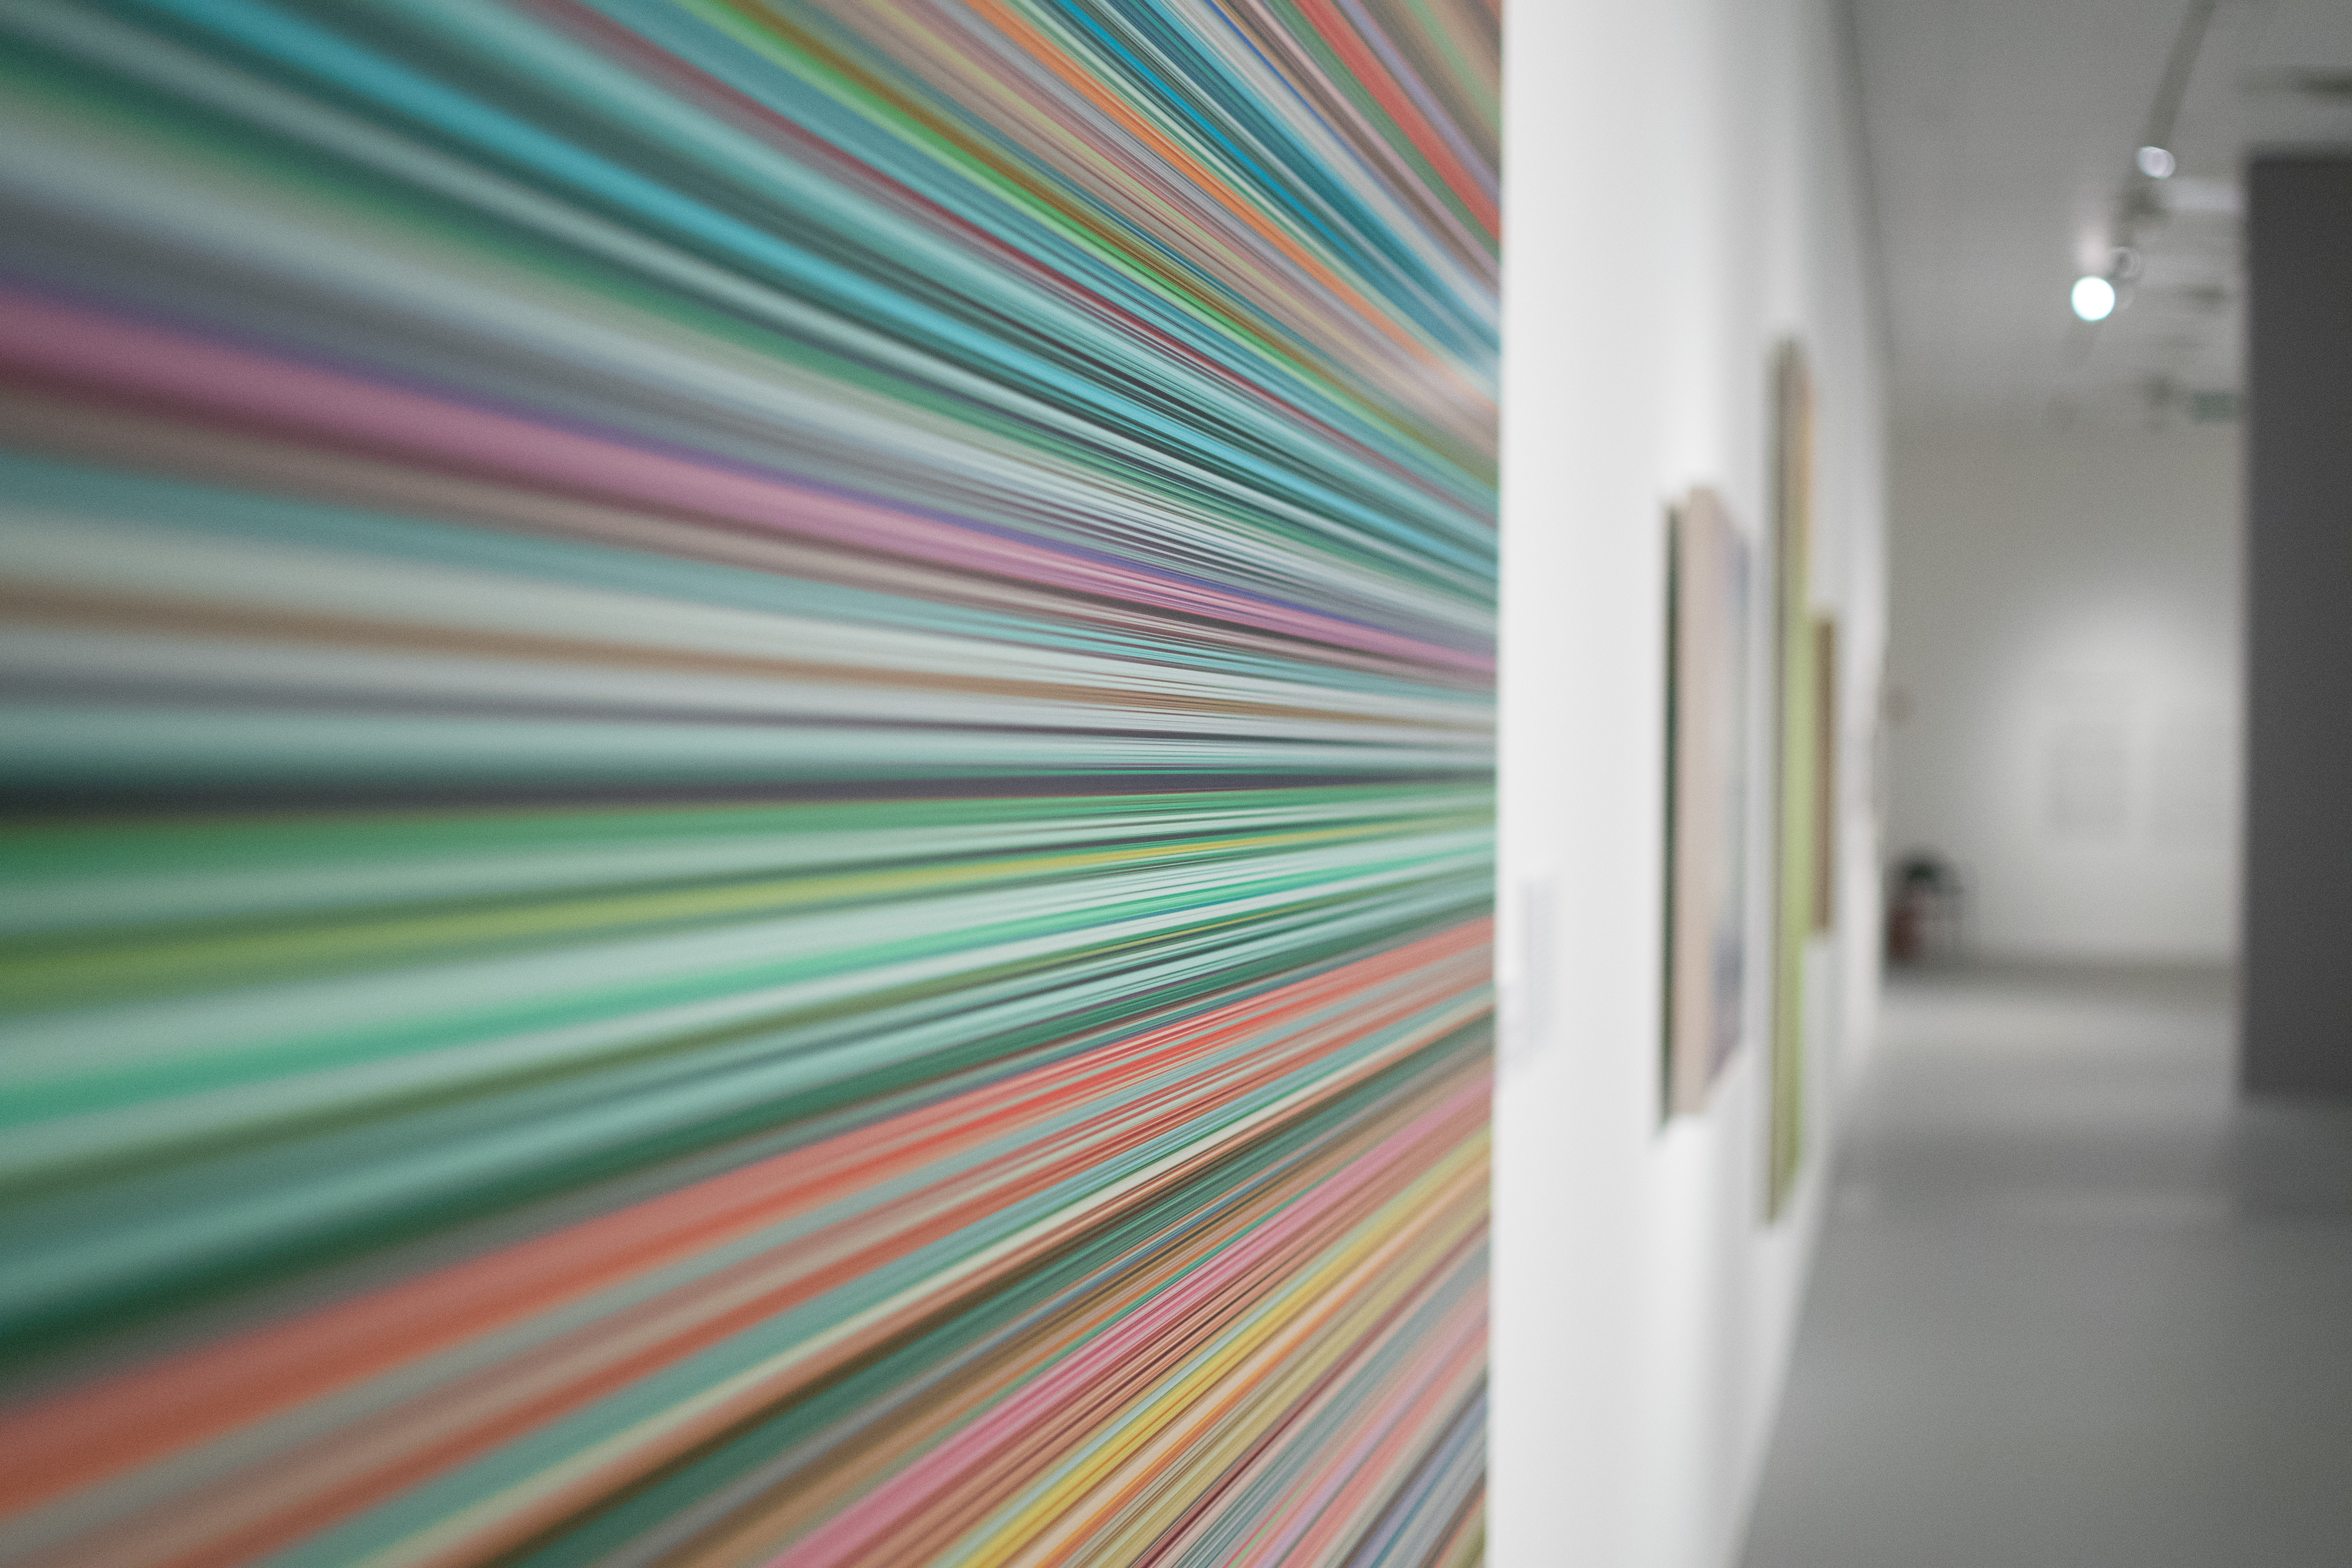 Richter a 2010-es években a digitális printek műfajával is megismerkedett